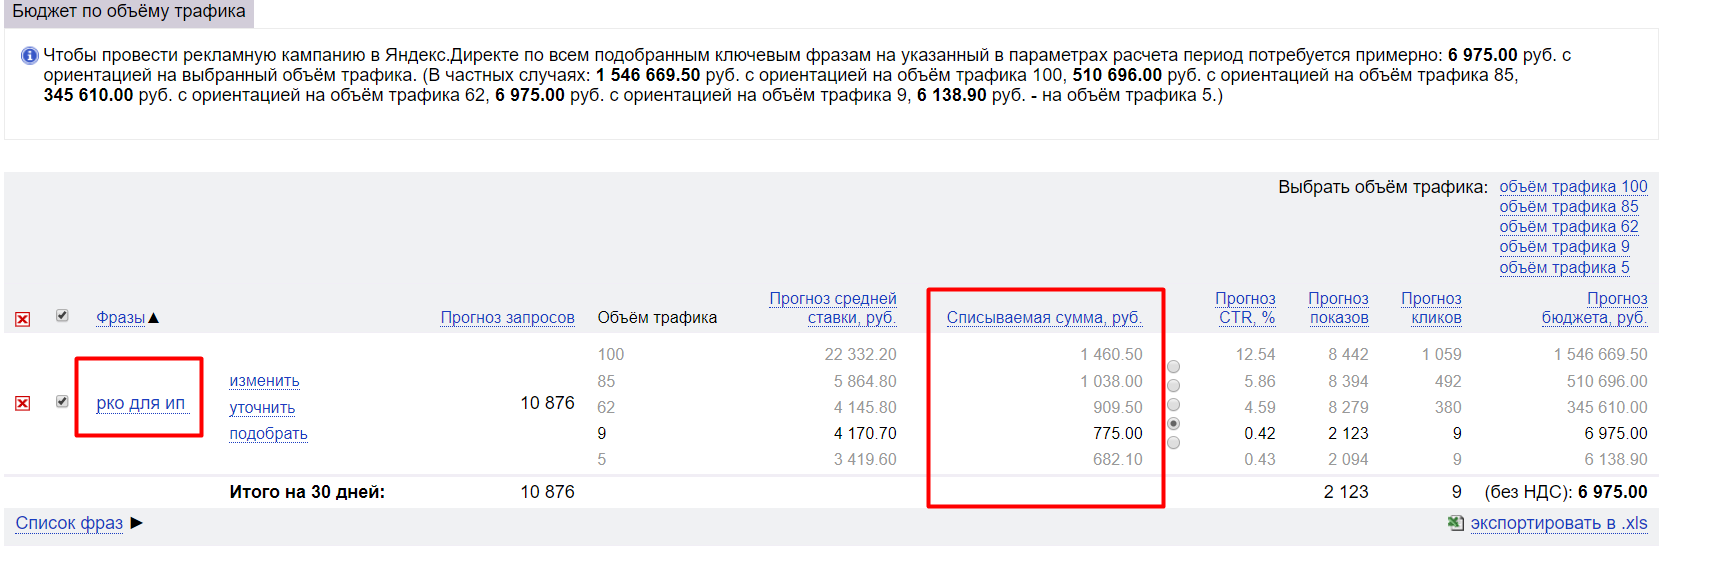 Стоимость привлечения клиента в Яндексе по одному из запросов, касающихся РКО